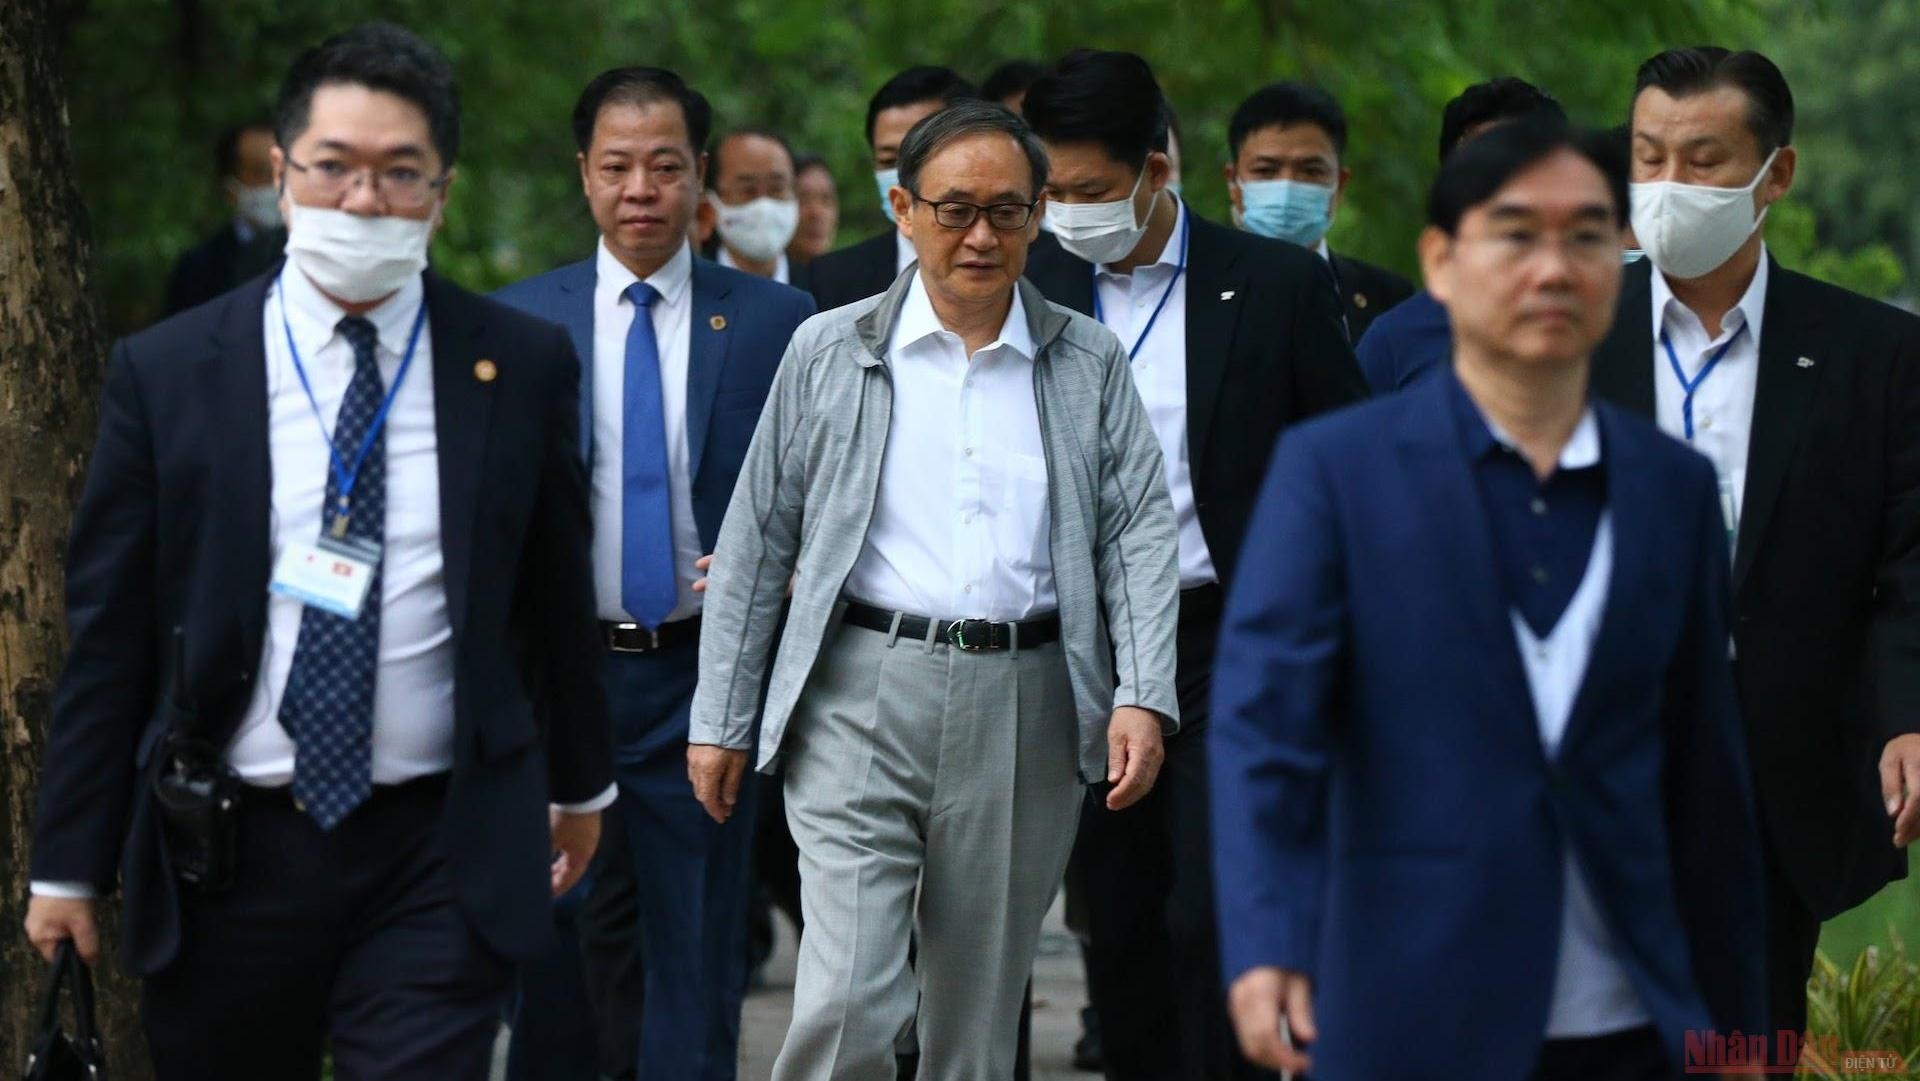 Japanese Prime Minister takes morning walk around Hoan Kiem lake